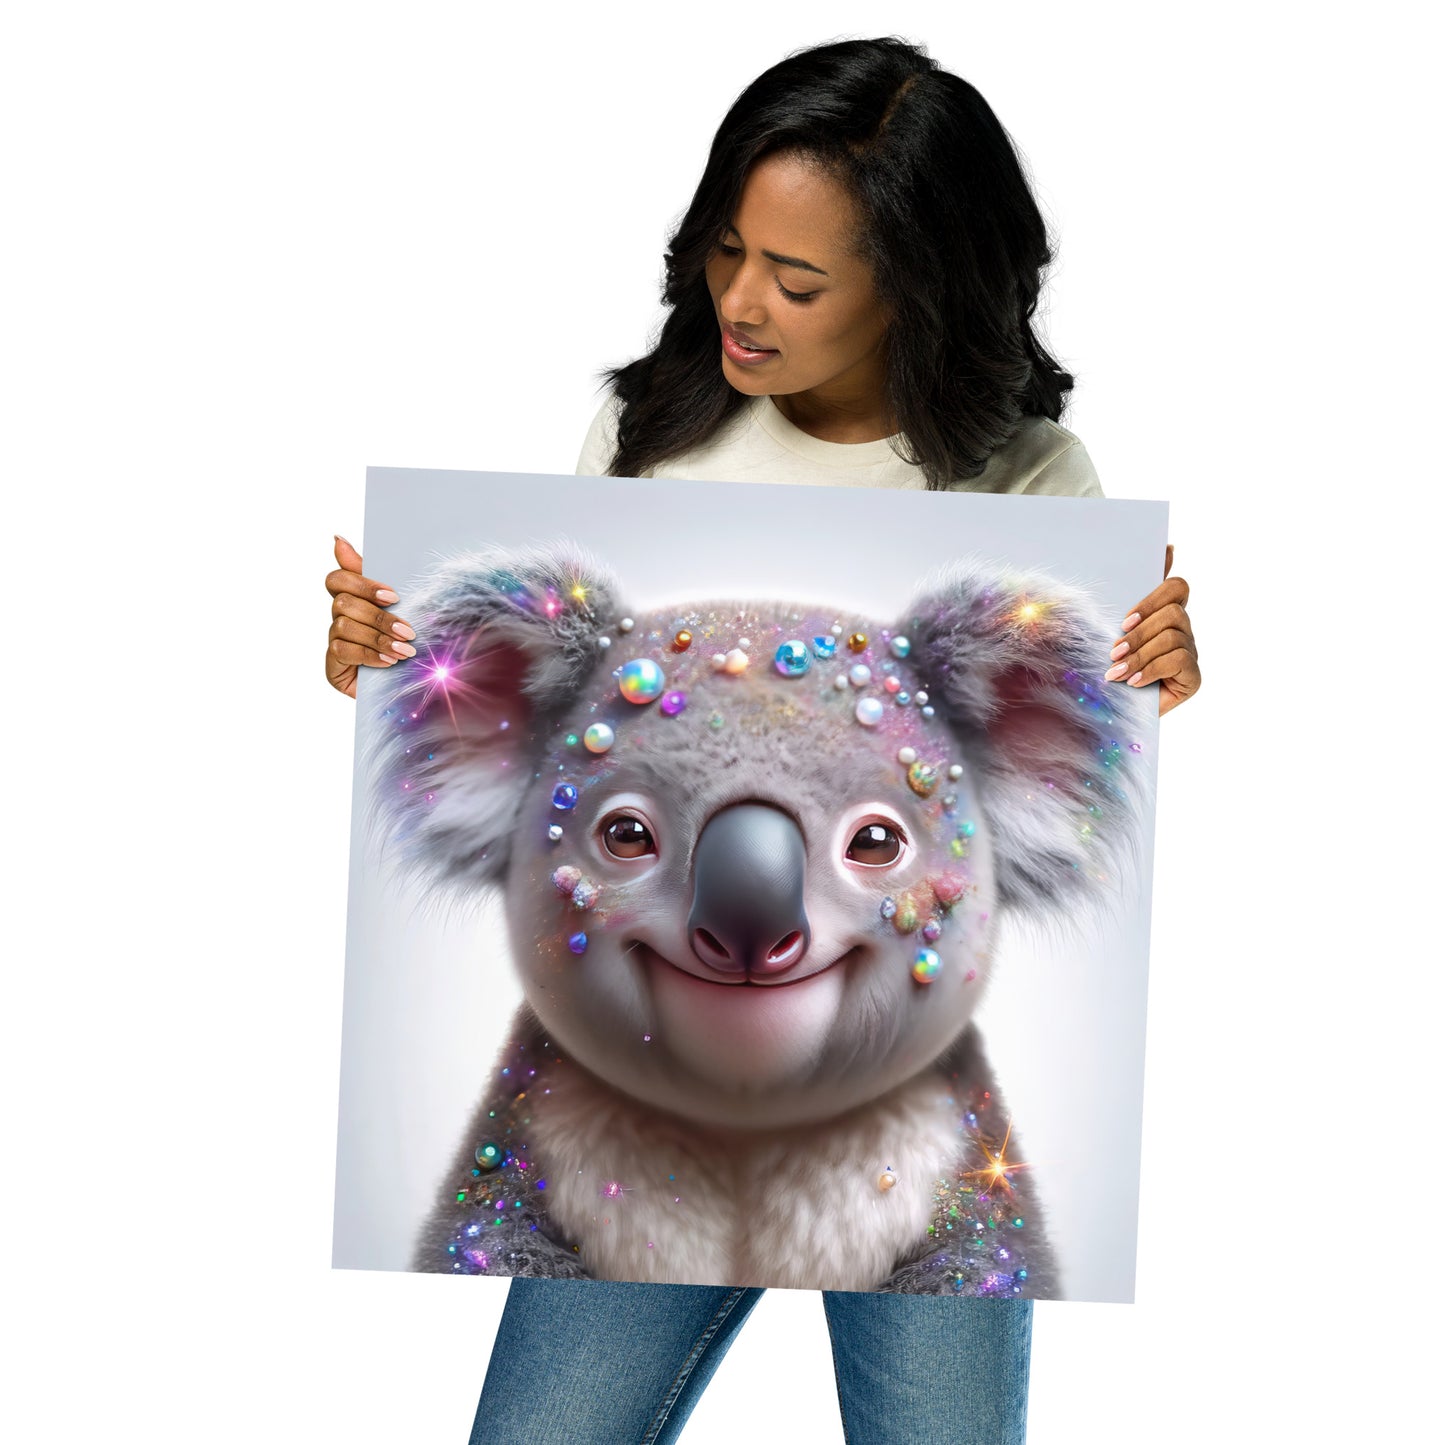 Bedazzled Baby Koala - Art Print